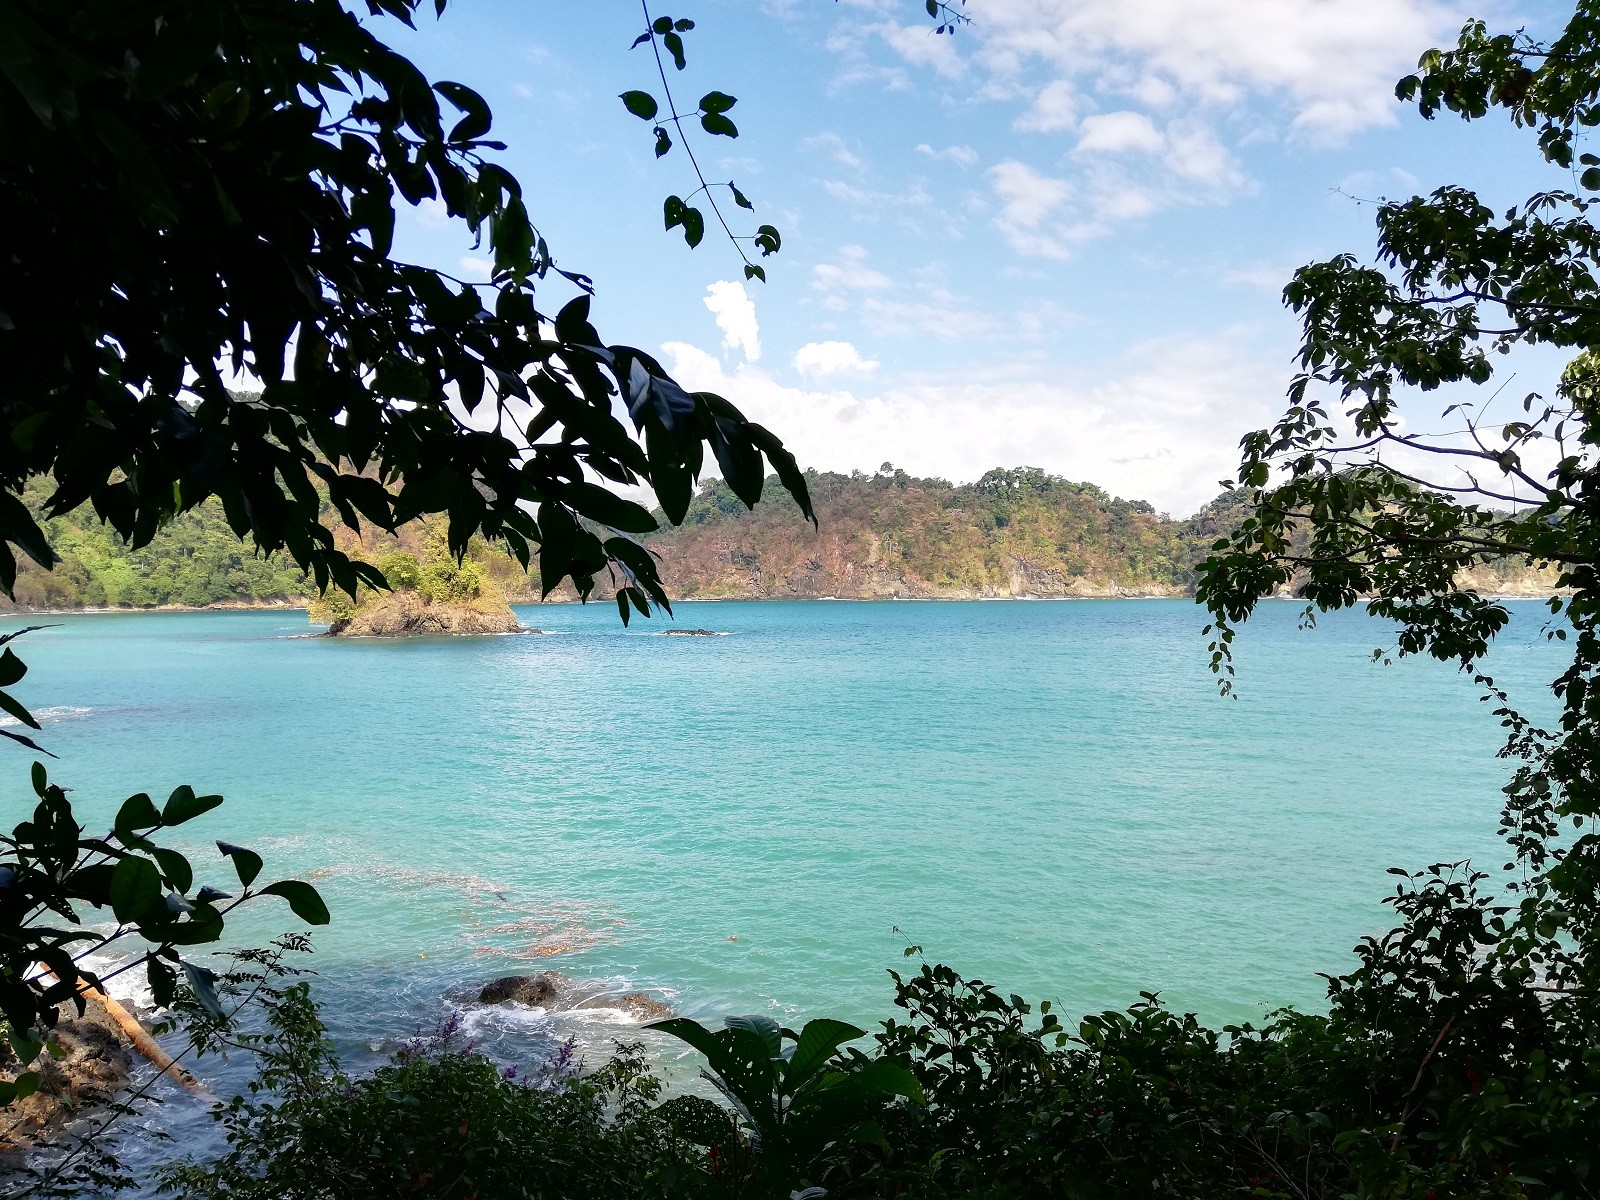 Costa Rica otra vez destaca en listados de turismo: ‘Traveller’ resalta playa tica entre las mejores del mundo